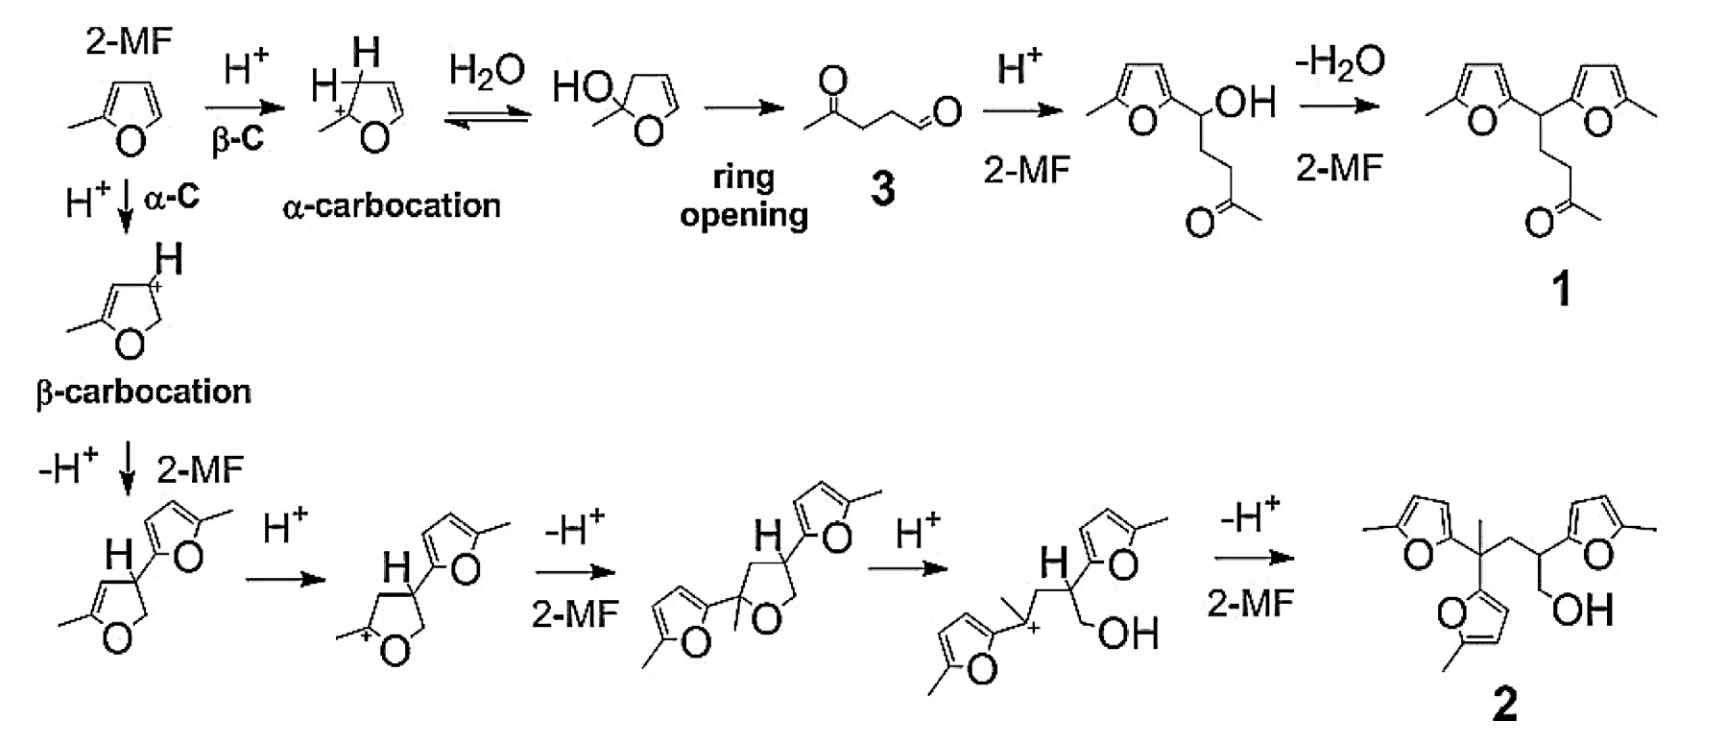 산촉매하 개환 반응 경로 및 2-MF로부터 삼량체, 사량체 생산.